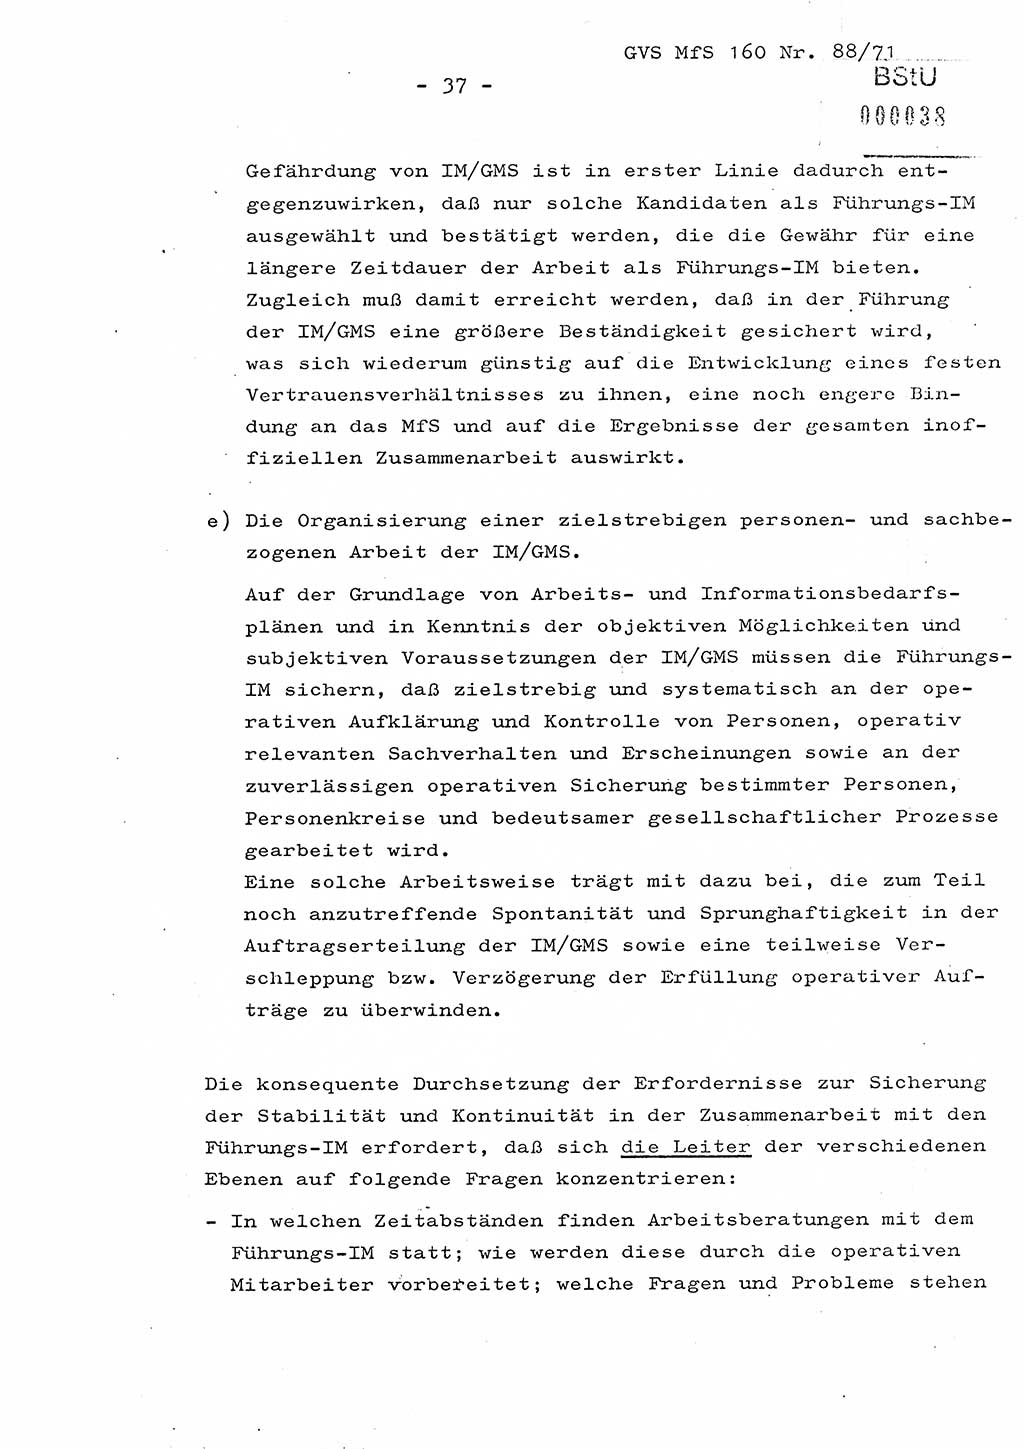 Dissertation Oberstleutnant Josef Schwarz (BV Schwerin), Major Fritz Amm (JHS), Hauptmann Peter Gräßler (JHS), Ministerium für Staatssicherheit (MfS) [Deutsche Demokratische Republik (DDR)], Juristische Hochschule (JHS), Geheime Verschlußsache (GVS) 160-88/71, Potsdam 1972, Seite 37 (Diss. MfS DDR JHS GVS 160-88/71 1972, S. 37)